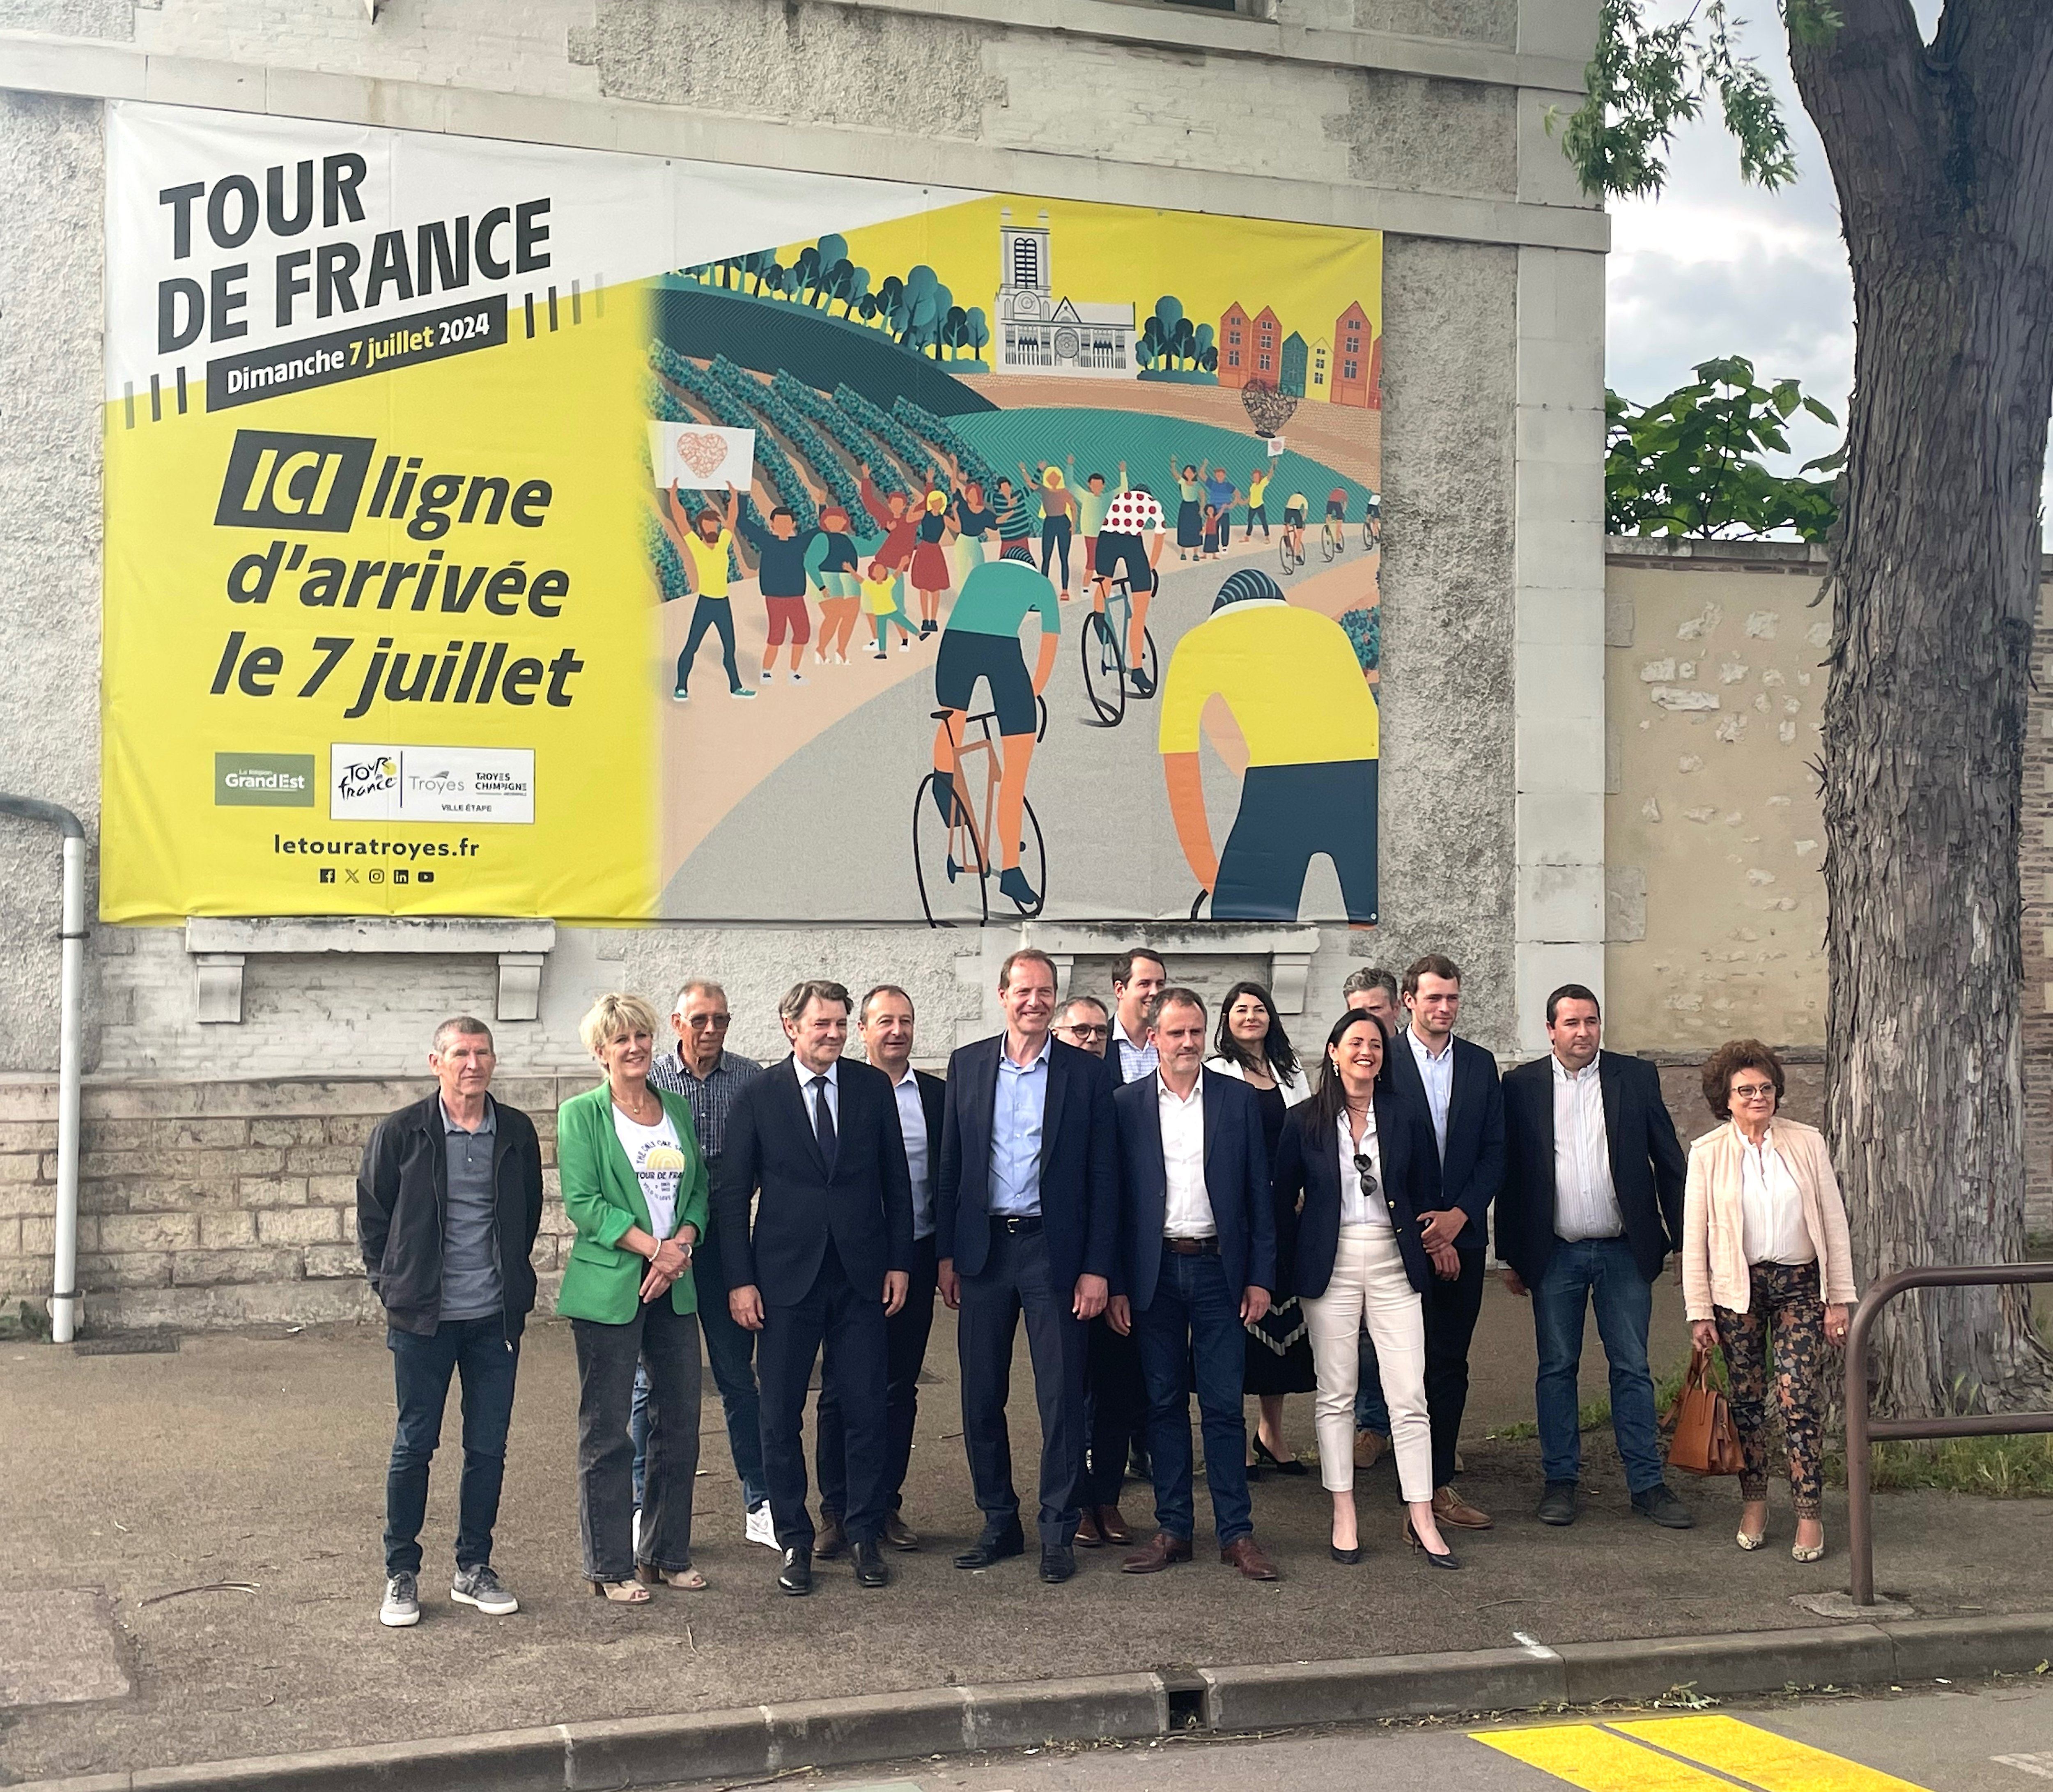 Christian Prudhomme, le patron du Tour de France, a inauguré mercredi 5 juin, les lignes de départ et d'arrivée de l'étape Troyes-Troyes prévue le dimanche 7 juillet. LP/Stéphane Magnoux